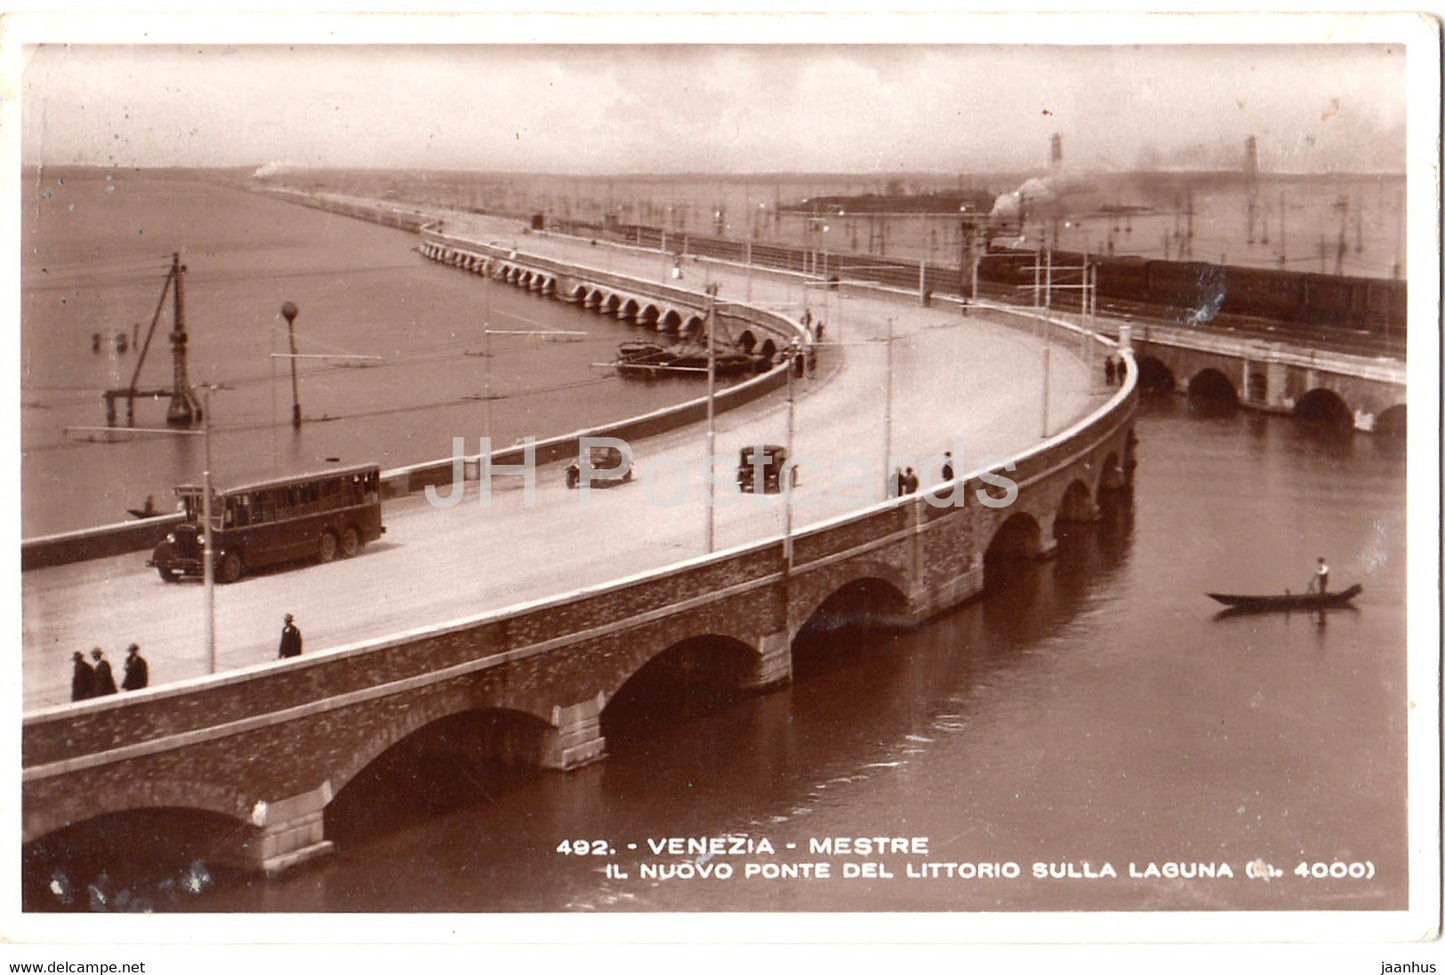 Venezia - Venice - Mestre - Il Nuovo Ponte del Littorio Sulla Laguna - bus - 492 - old postcard - Italy - unused - JH Postcards